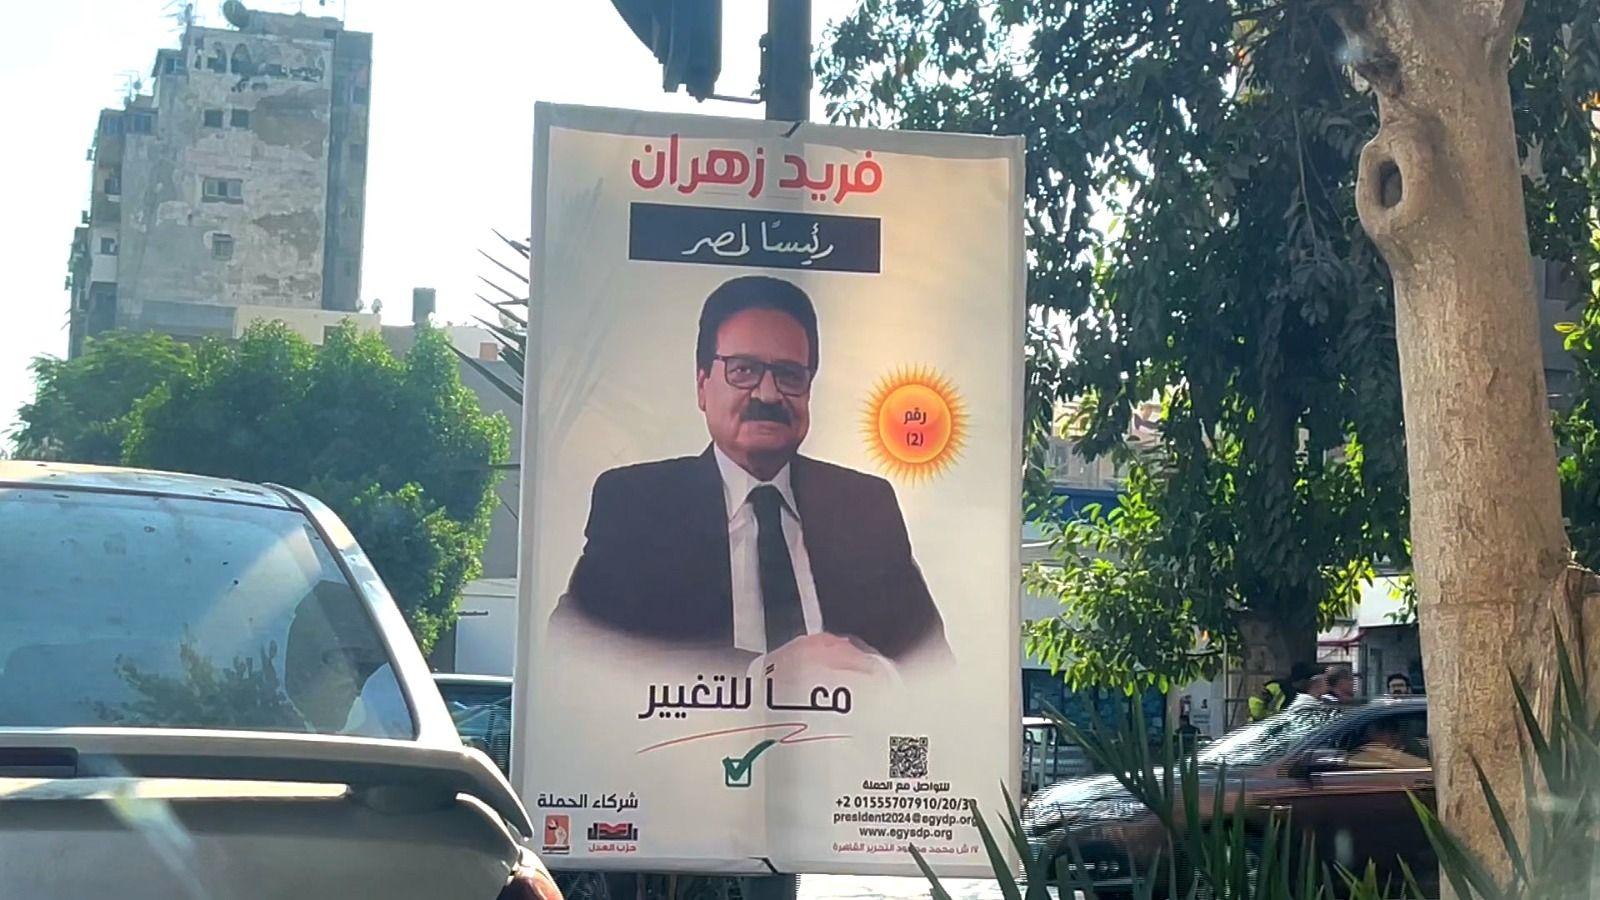 ملصقات لفريد زهران أحد مرشحي الانتخابات الرئاسية المصرية